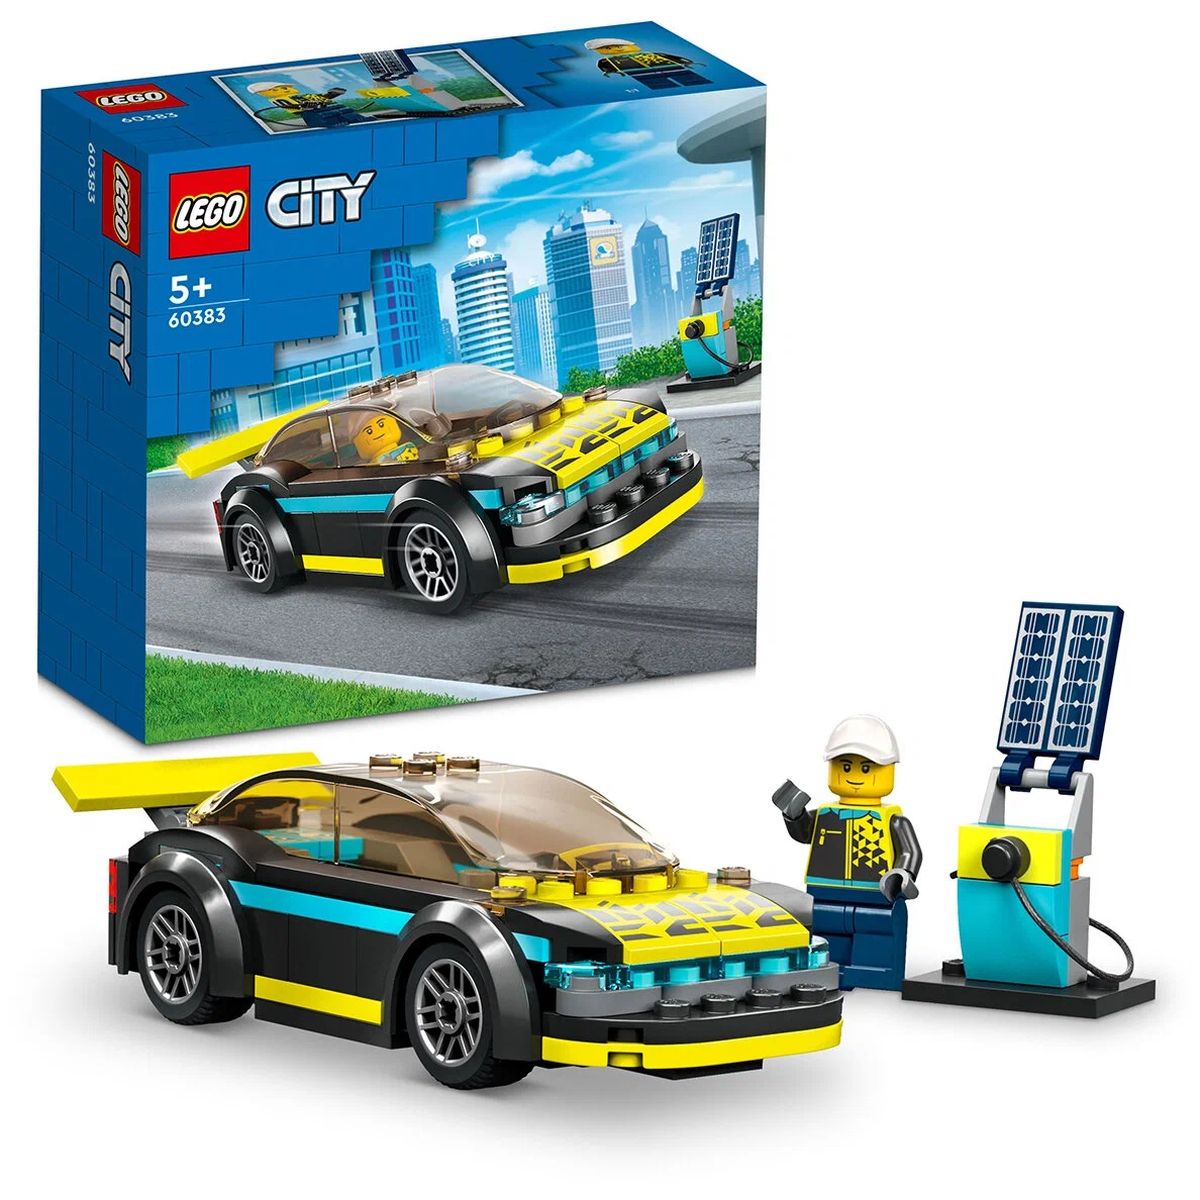 Конструктор LEGO City Электрический спорткар, 95 деталей, 60383 конструктор lego creator 31100 спортивный автомобиль